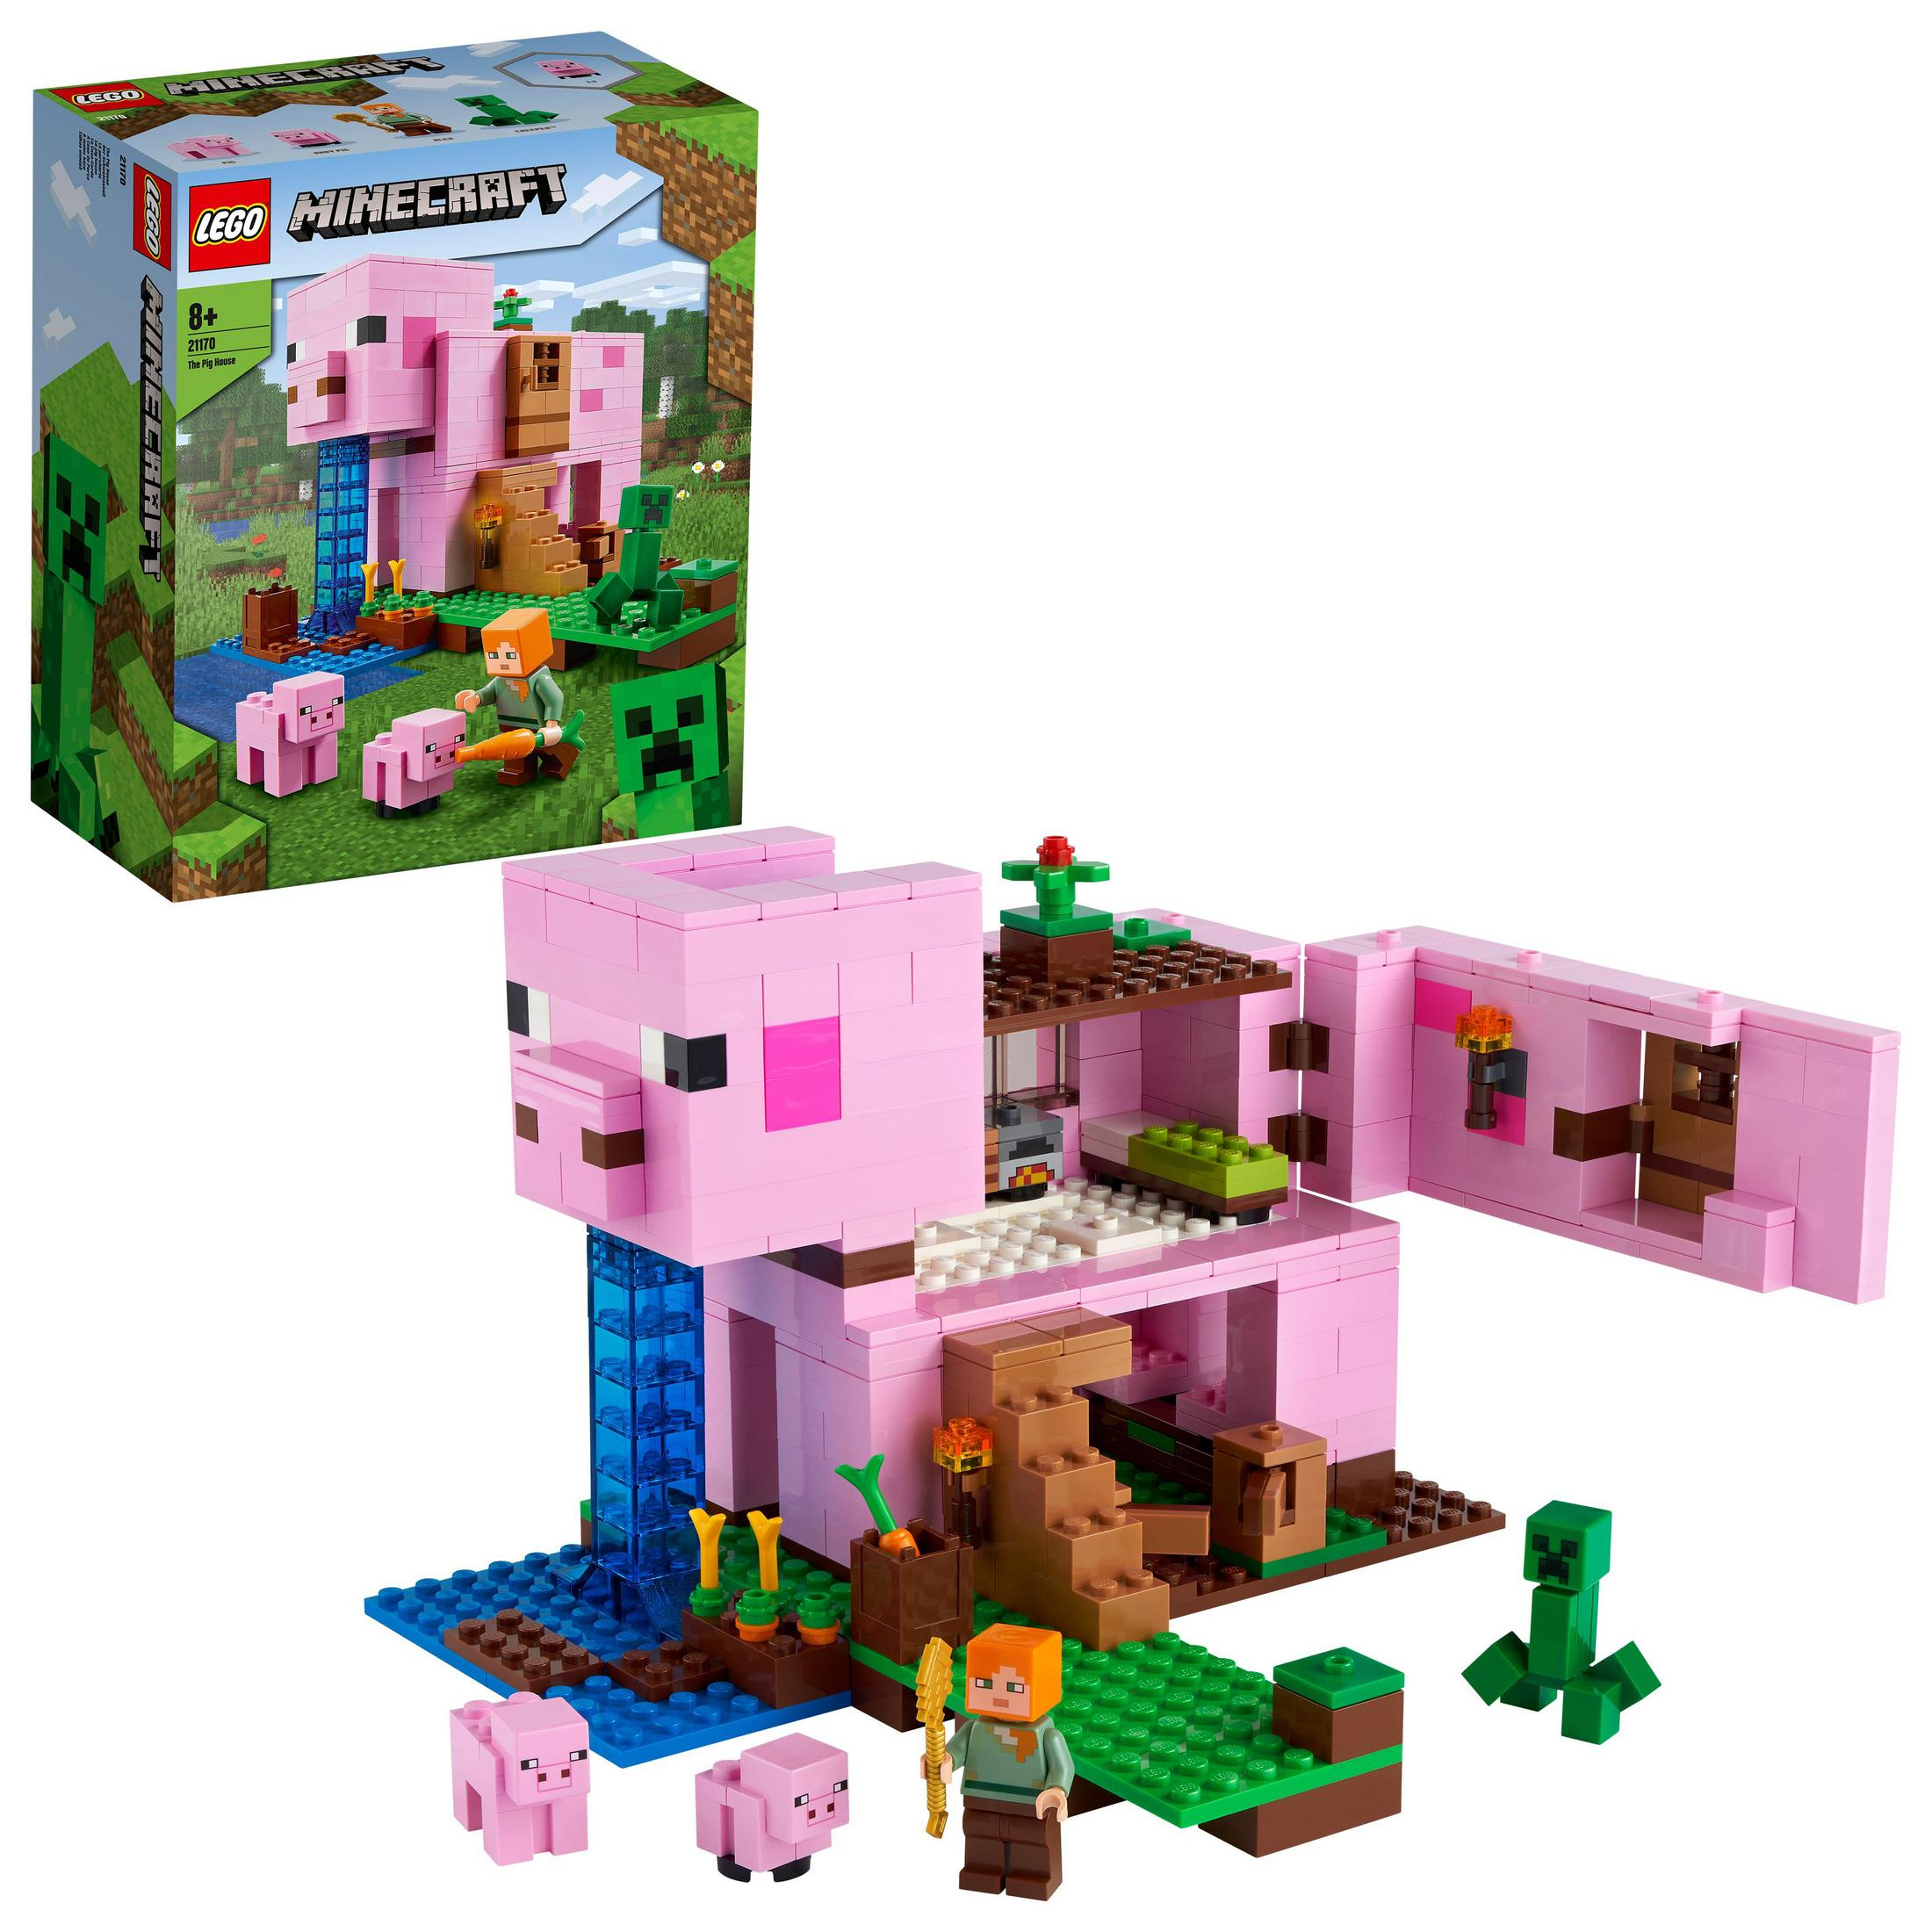 DAS LEGO LEGO SCHWEINEHAUS Minecraft 21170